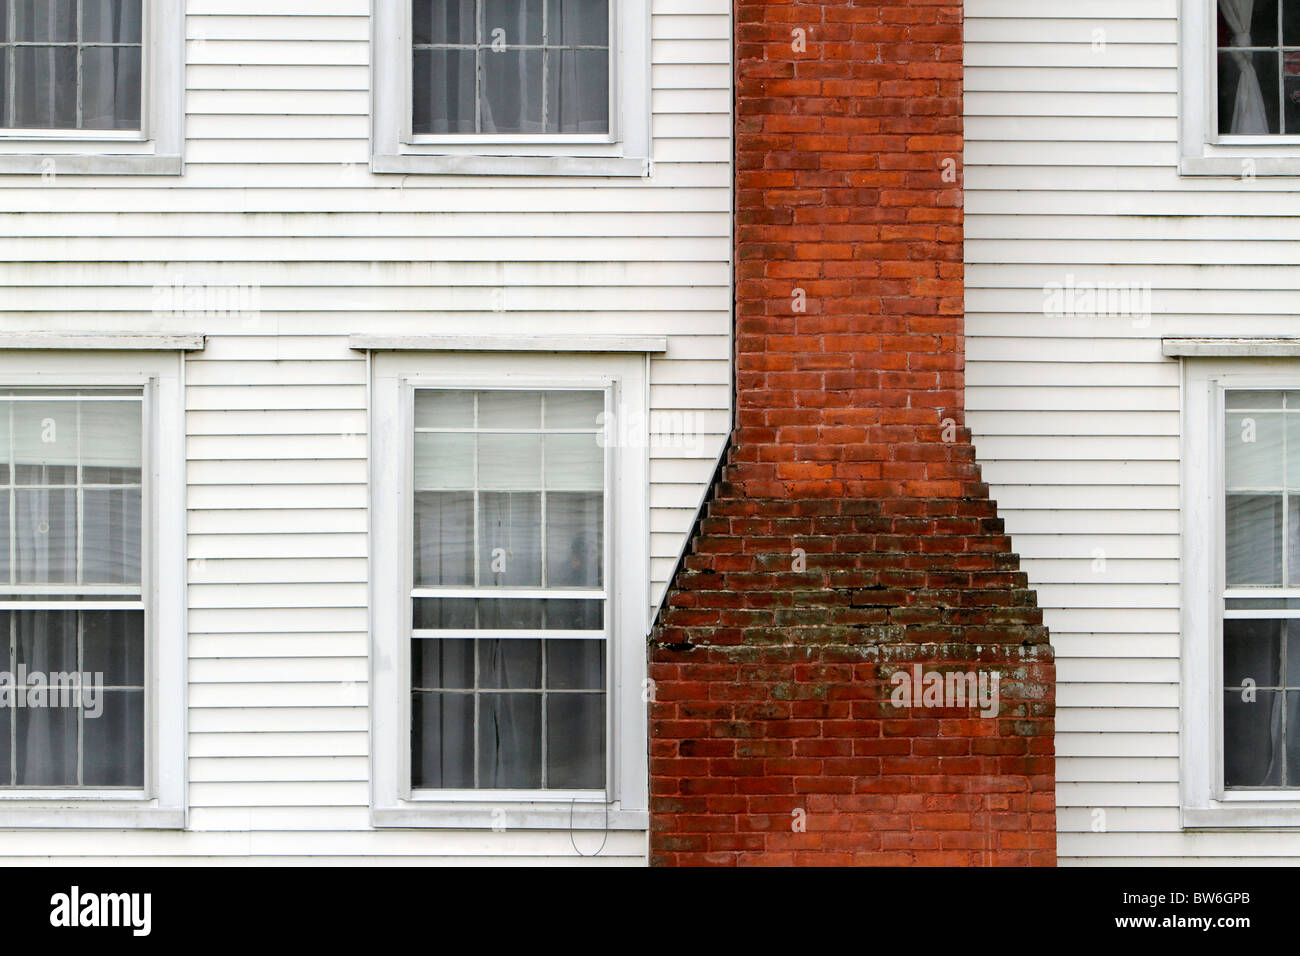 New England white clapboard house brick chimney Stock Photo